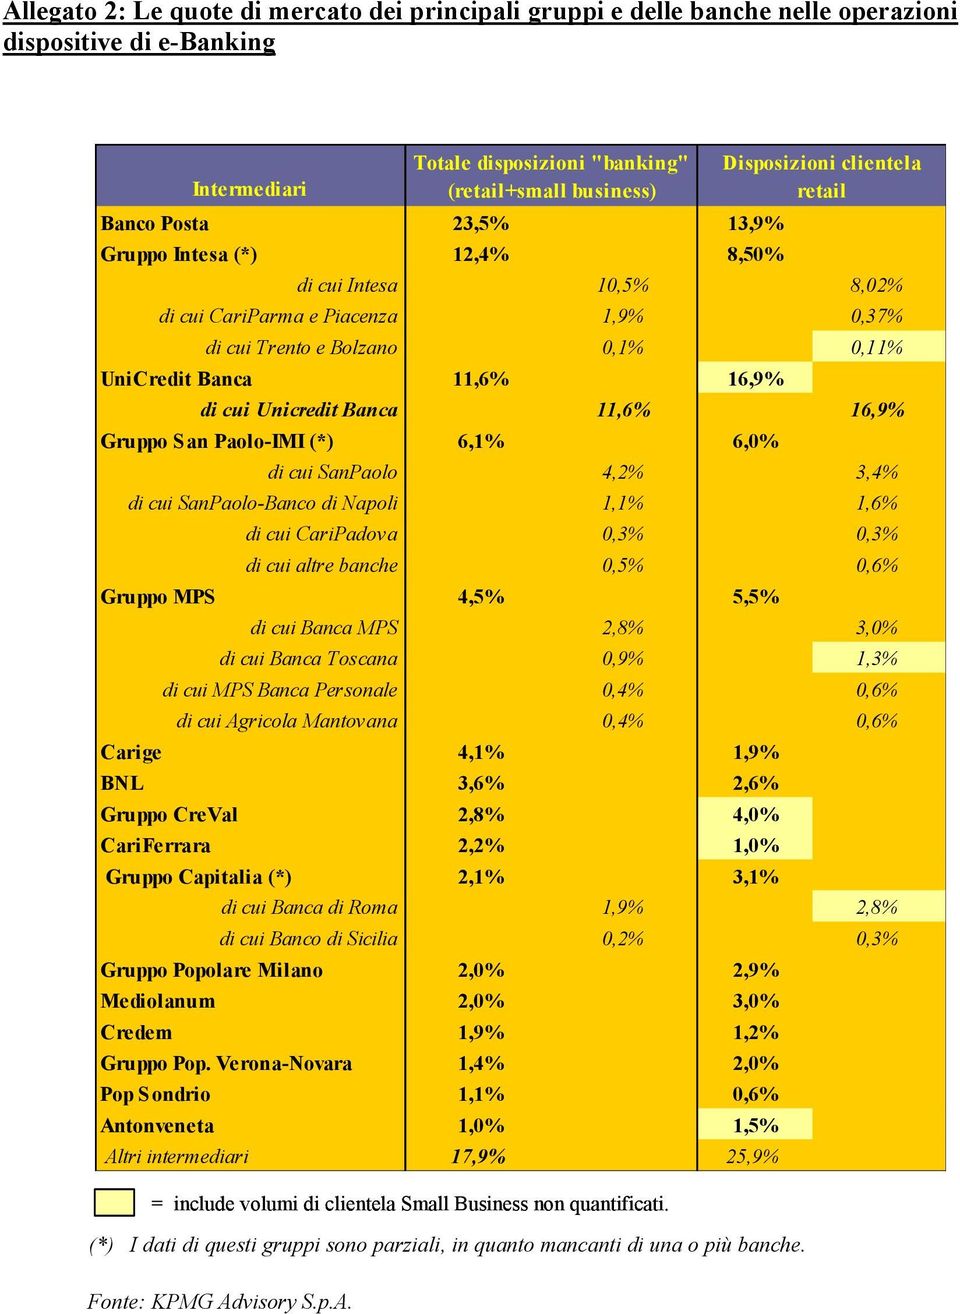 di cui Unicredit Banca 11,6% 16,9% Gruppo San Paolo-IMI (*) 6,1% 6,0% di cui SanPaolo 4,2% 3,4% di cui SanPaolo-Banco di Napoli 1,1% 1,6% di cui CariPadova 0,3% 0,3% di cui altre banche 0,5% 0,6%